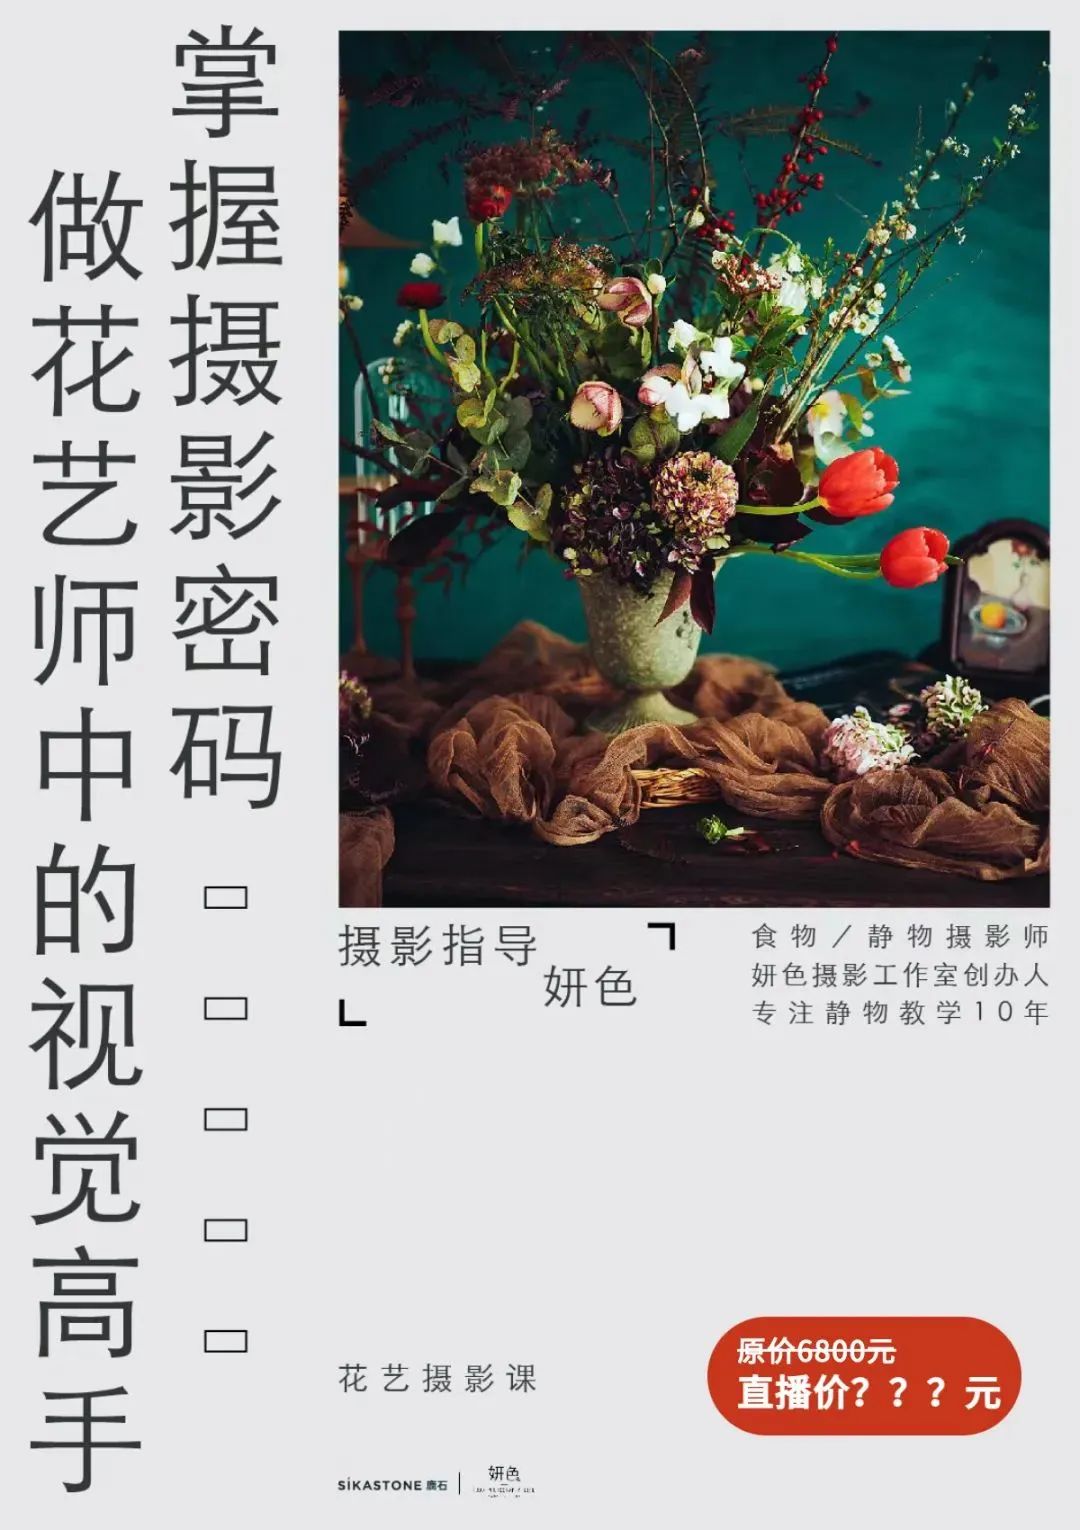 没来中国的日子里，外国花艺师们都在干嘛？